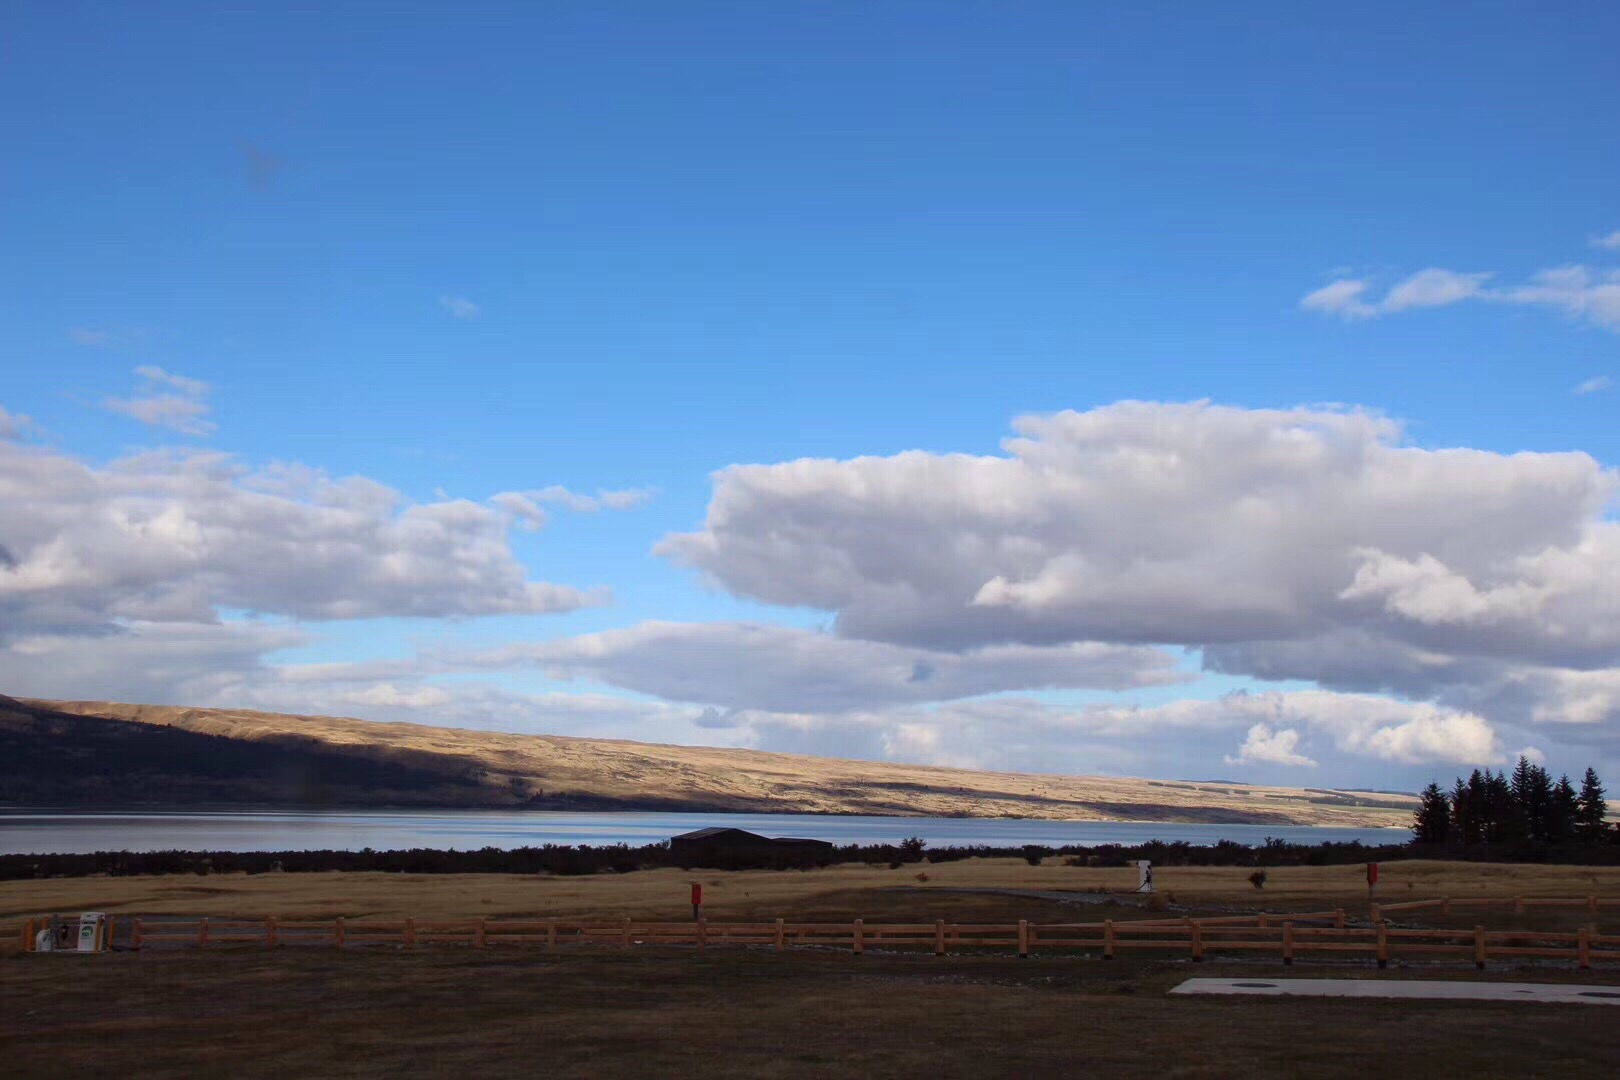 新西兰房车自驾15天-day3: 普卡基湖  普卡基湖位于库克山的南面，面积有169平方公里。说起它